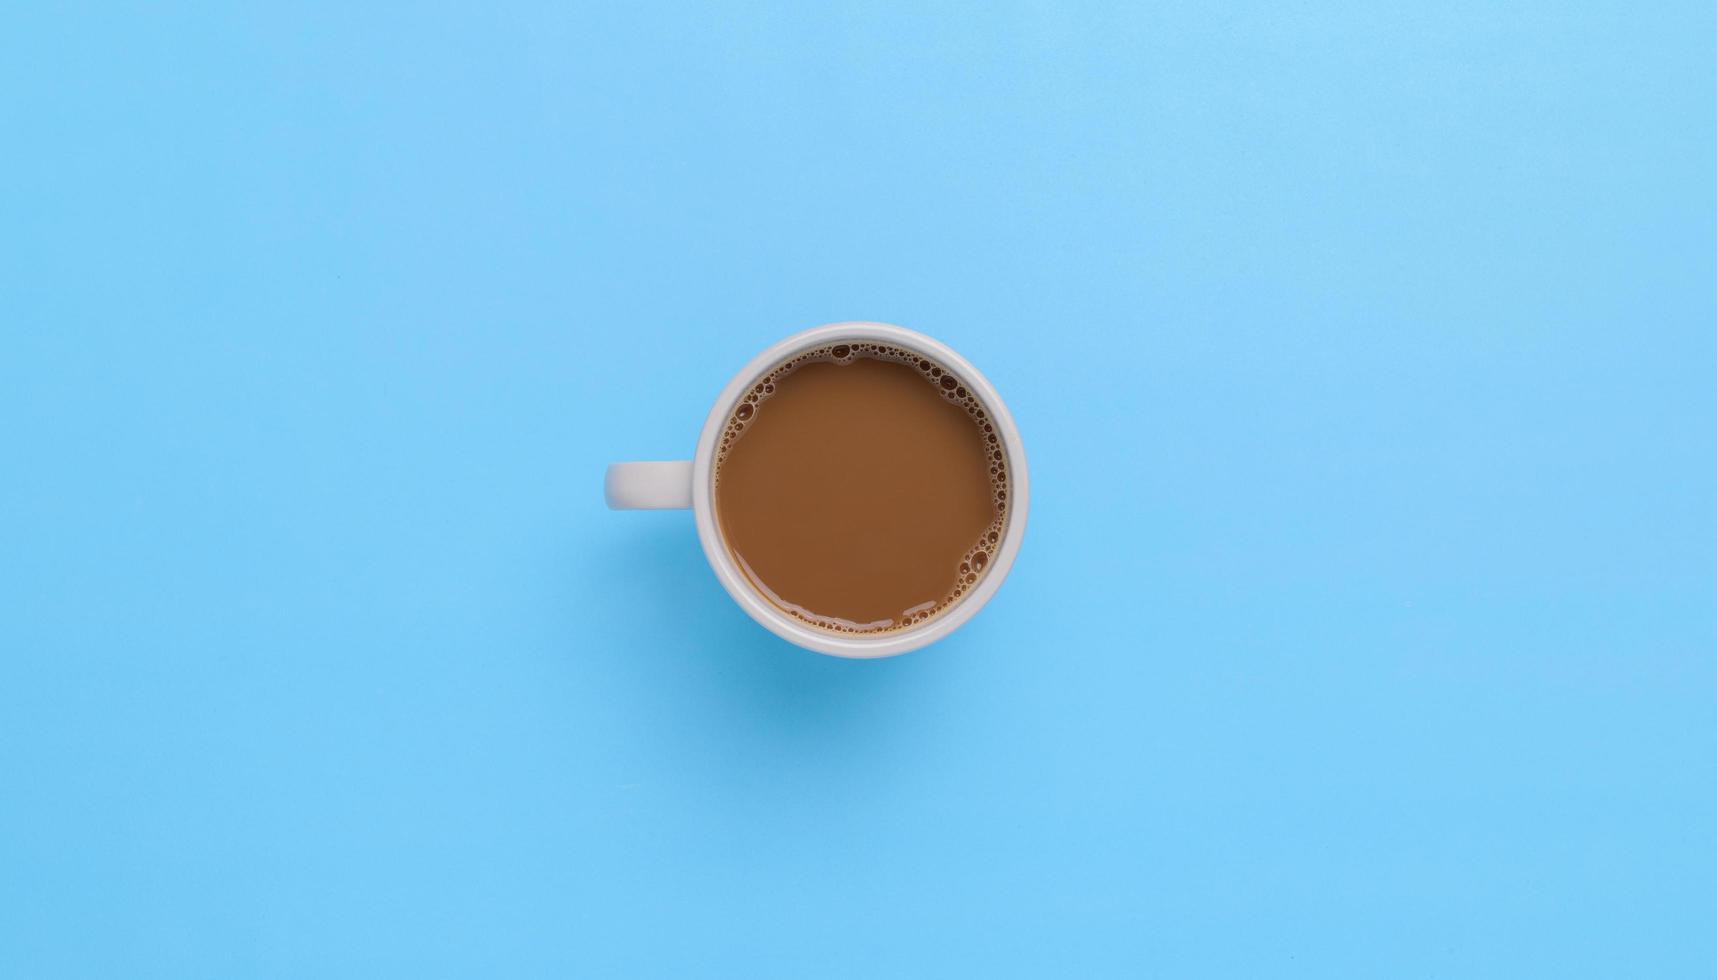 Hand holding a coffee mug on a blue background photo